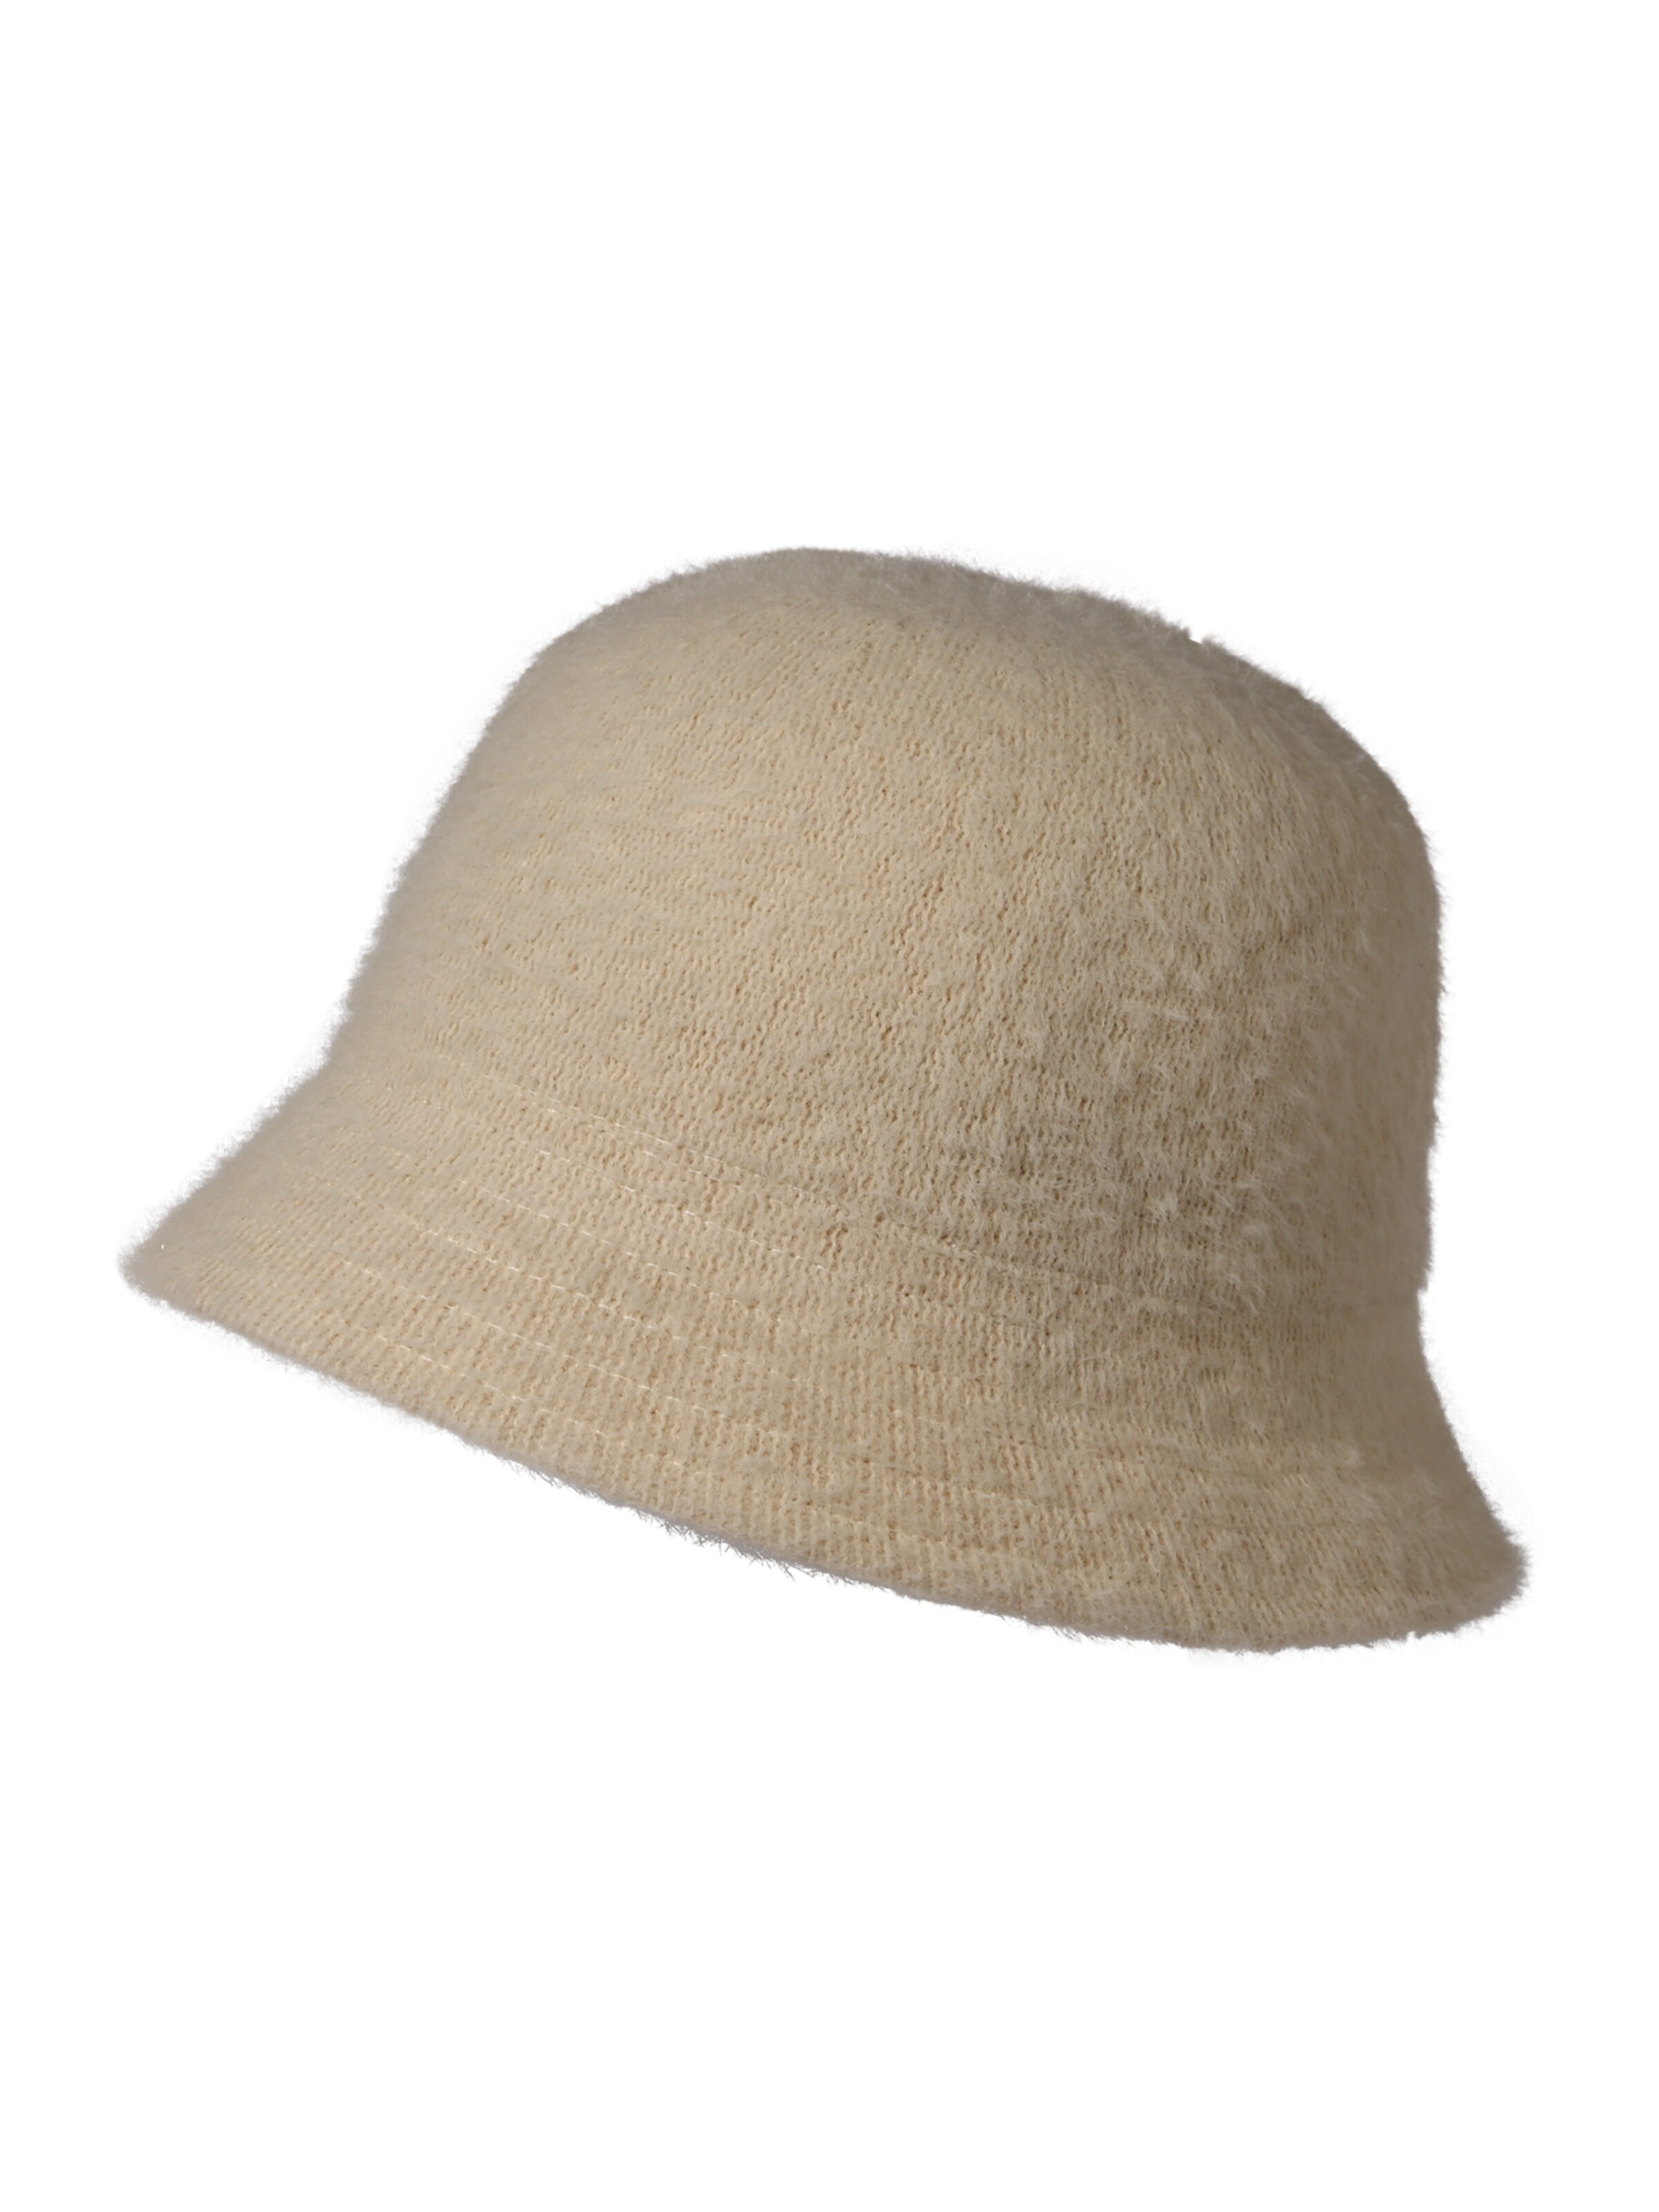 Rabatt 94 % Beige Einheitlich DAMEN Accessoires Hut und Mütze Beige Boomerang Hut und Mütze 